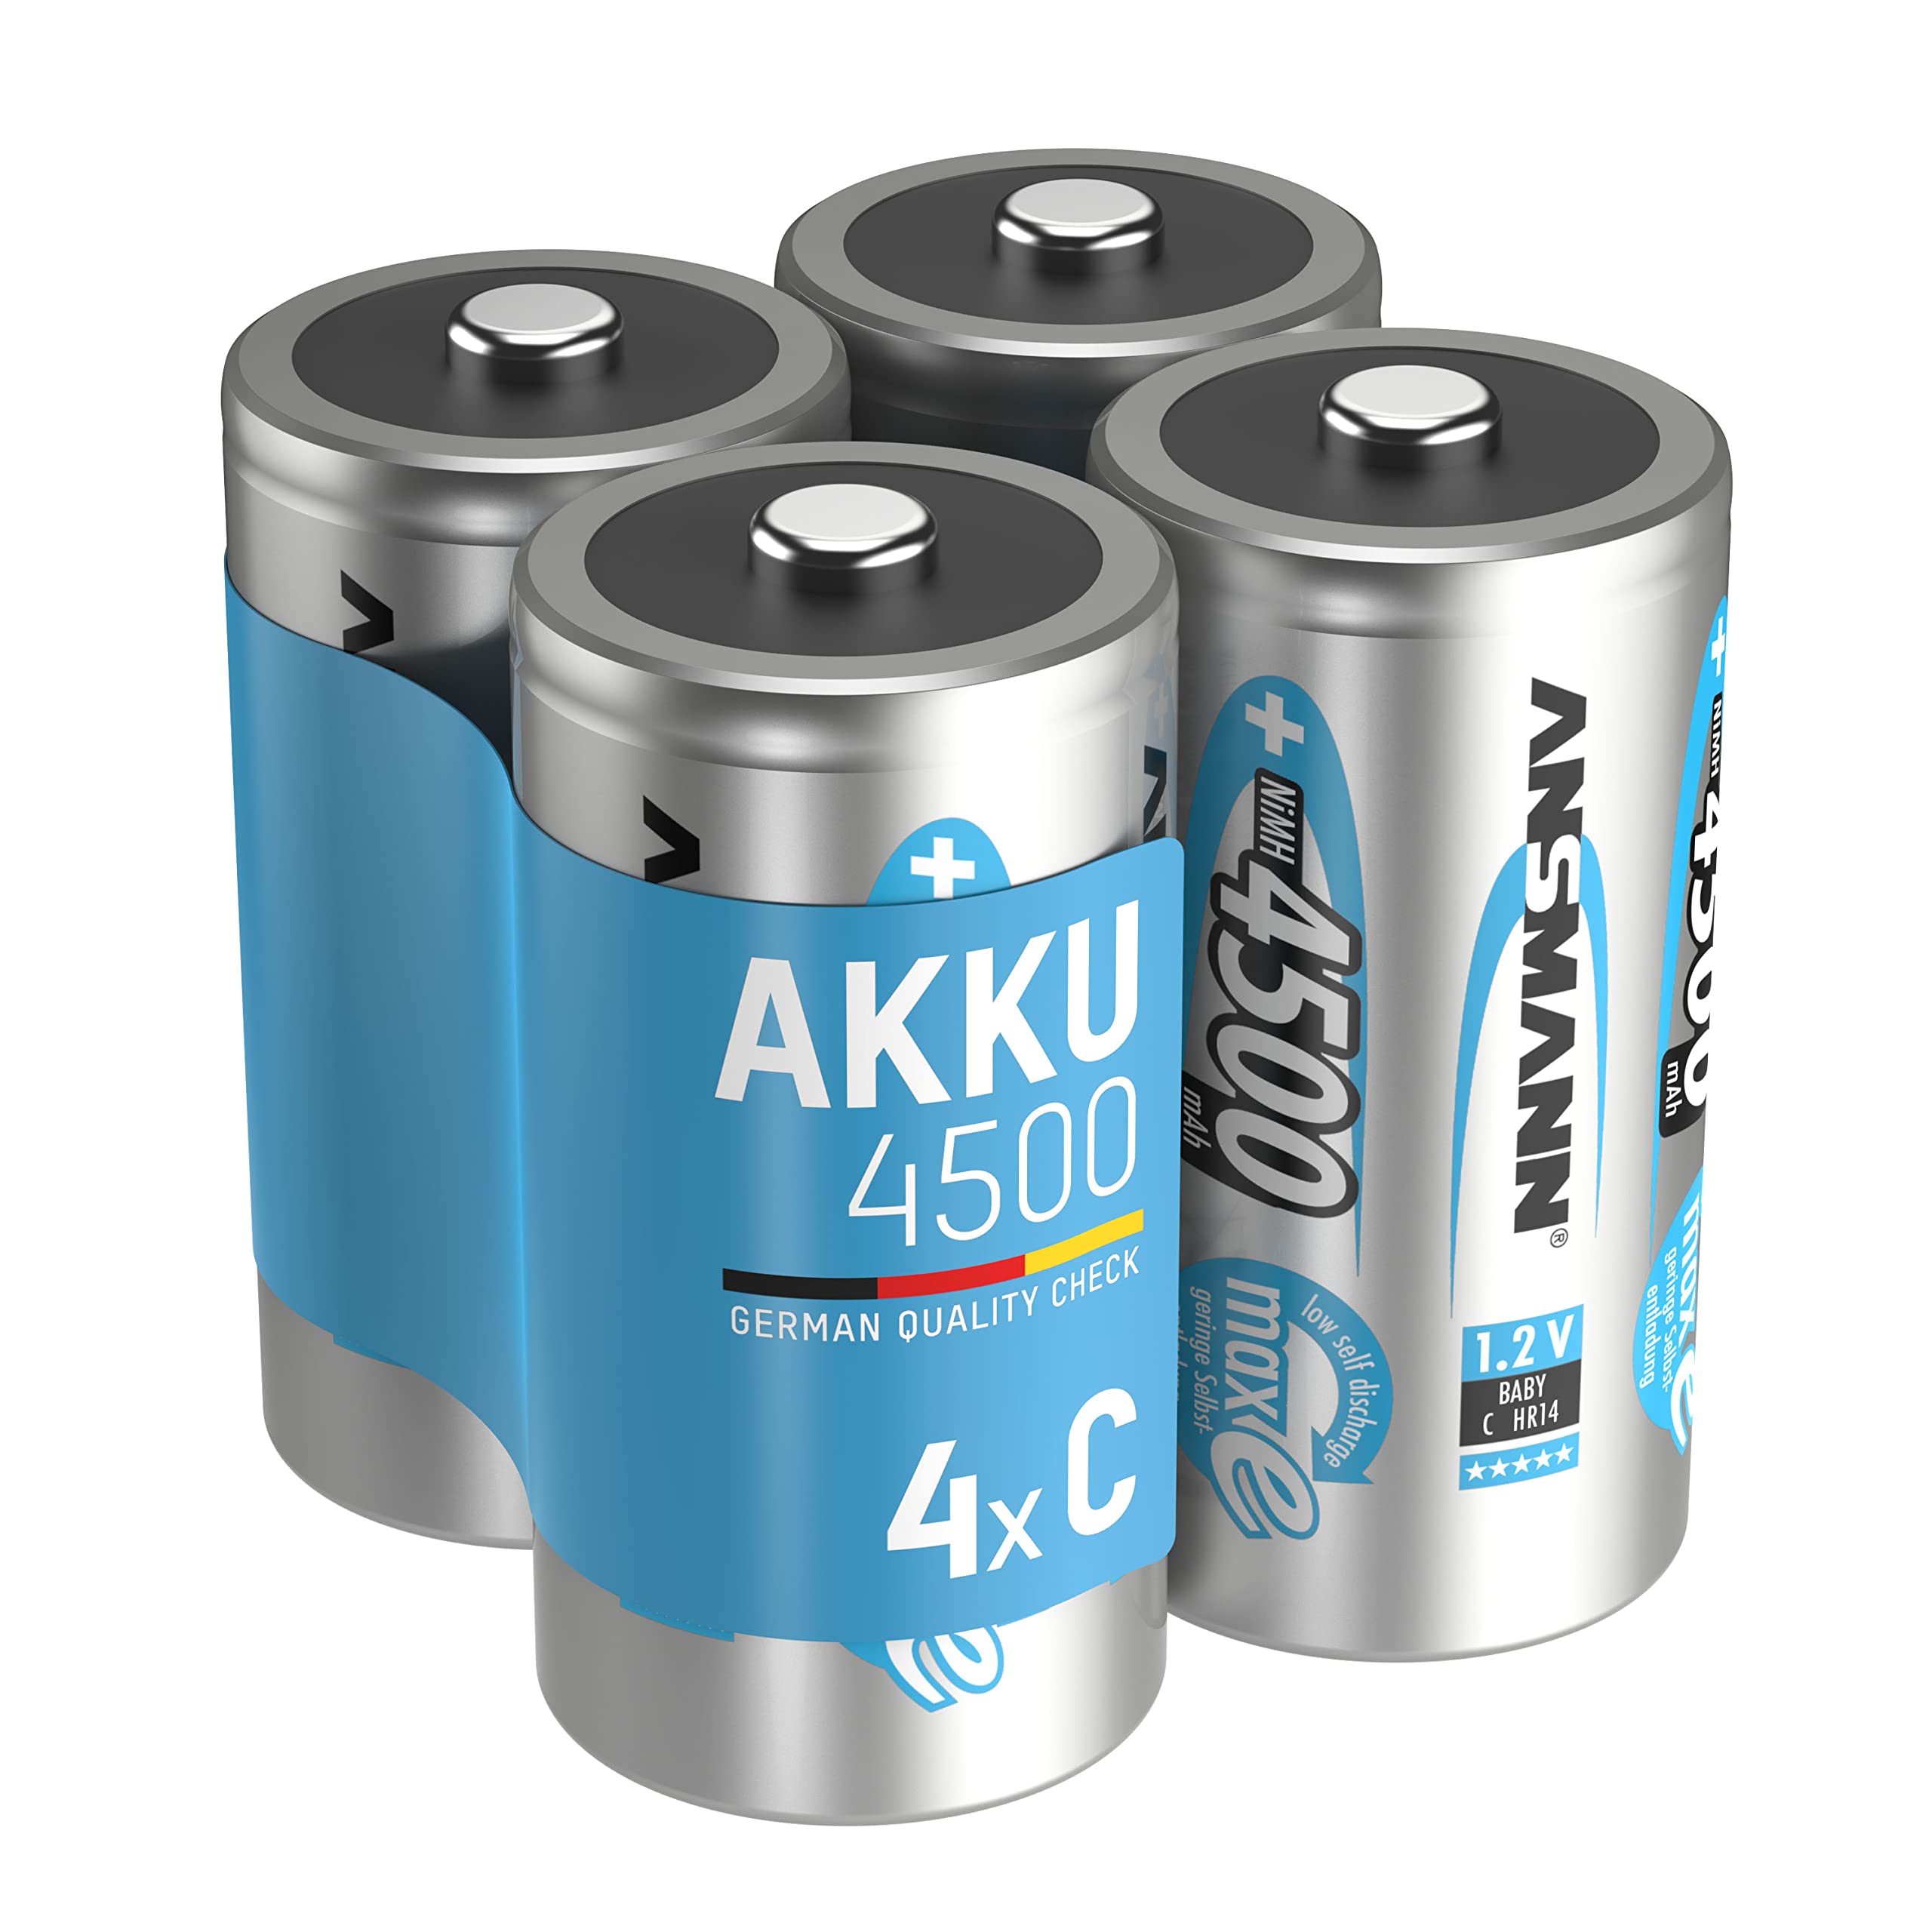 ANSMANN Akku C 4500 mAh NiMH 1,2 V (4 Stück) - Baby C Batterien wiederaufladbar, hohe Kapazität & maxE geringe Selbstentladung für hohen Strombedarf & jahrelangen Einsatz